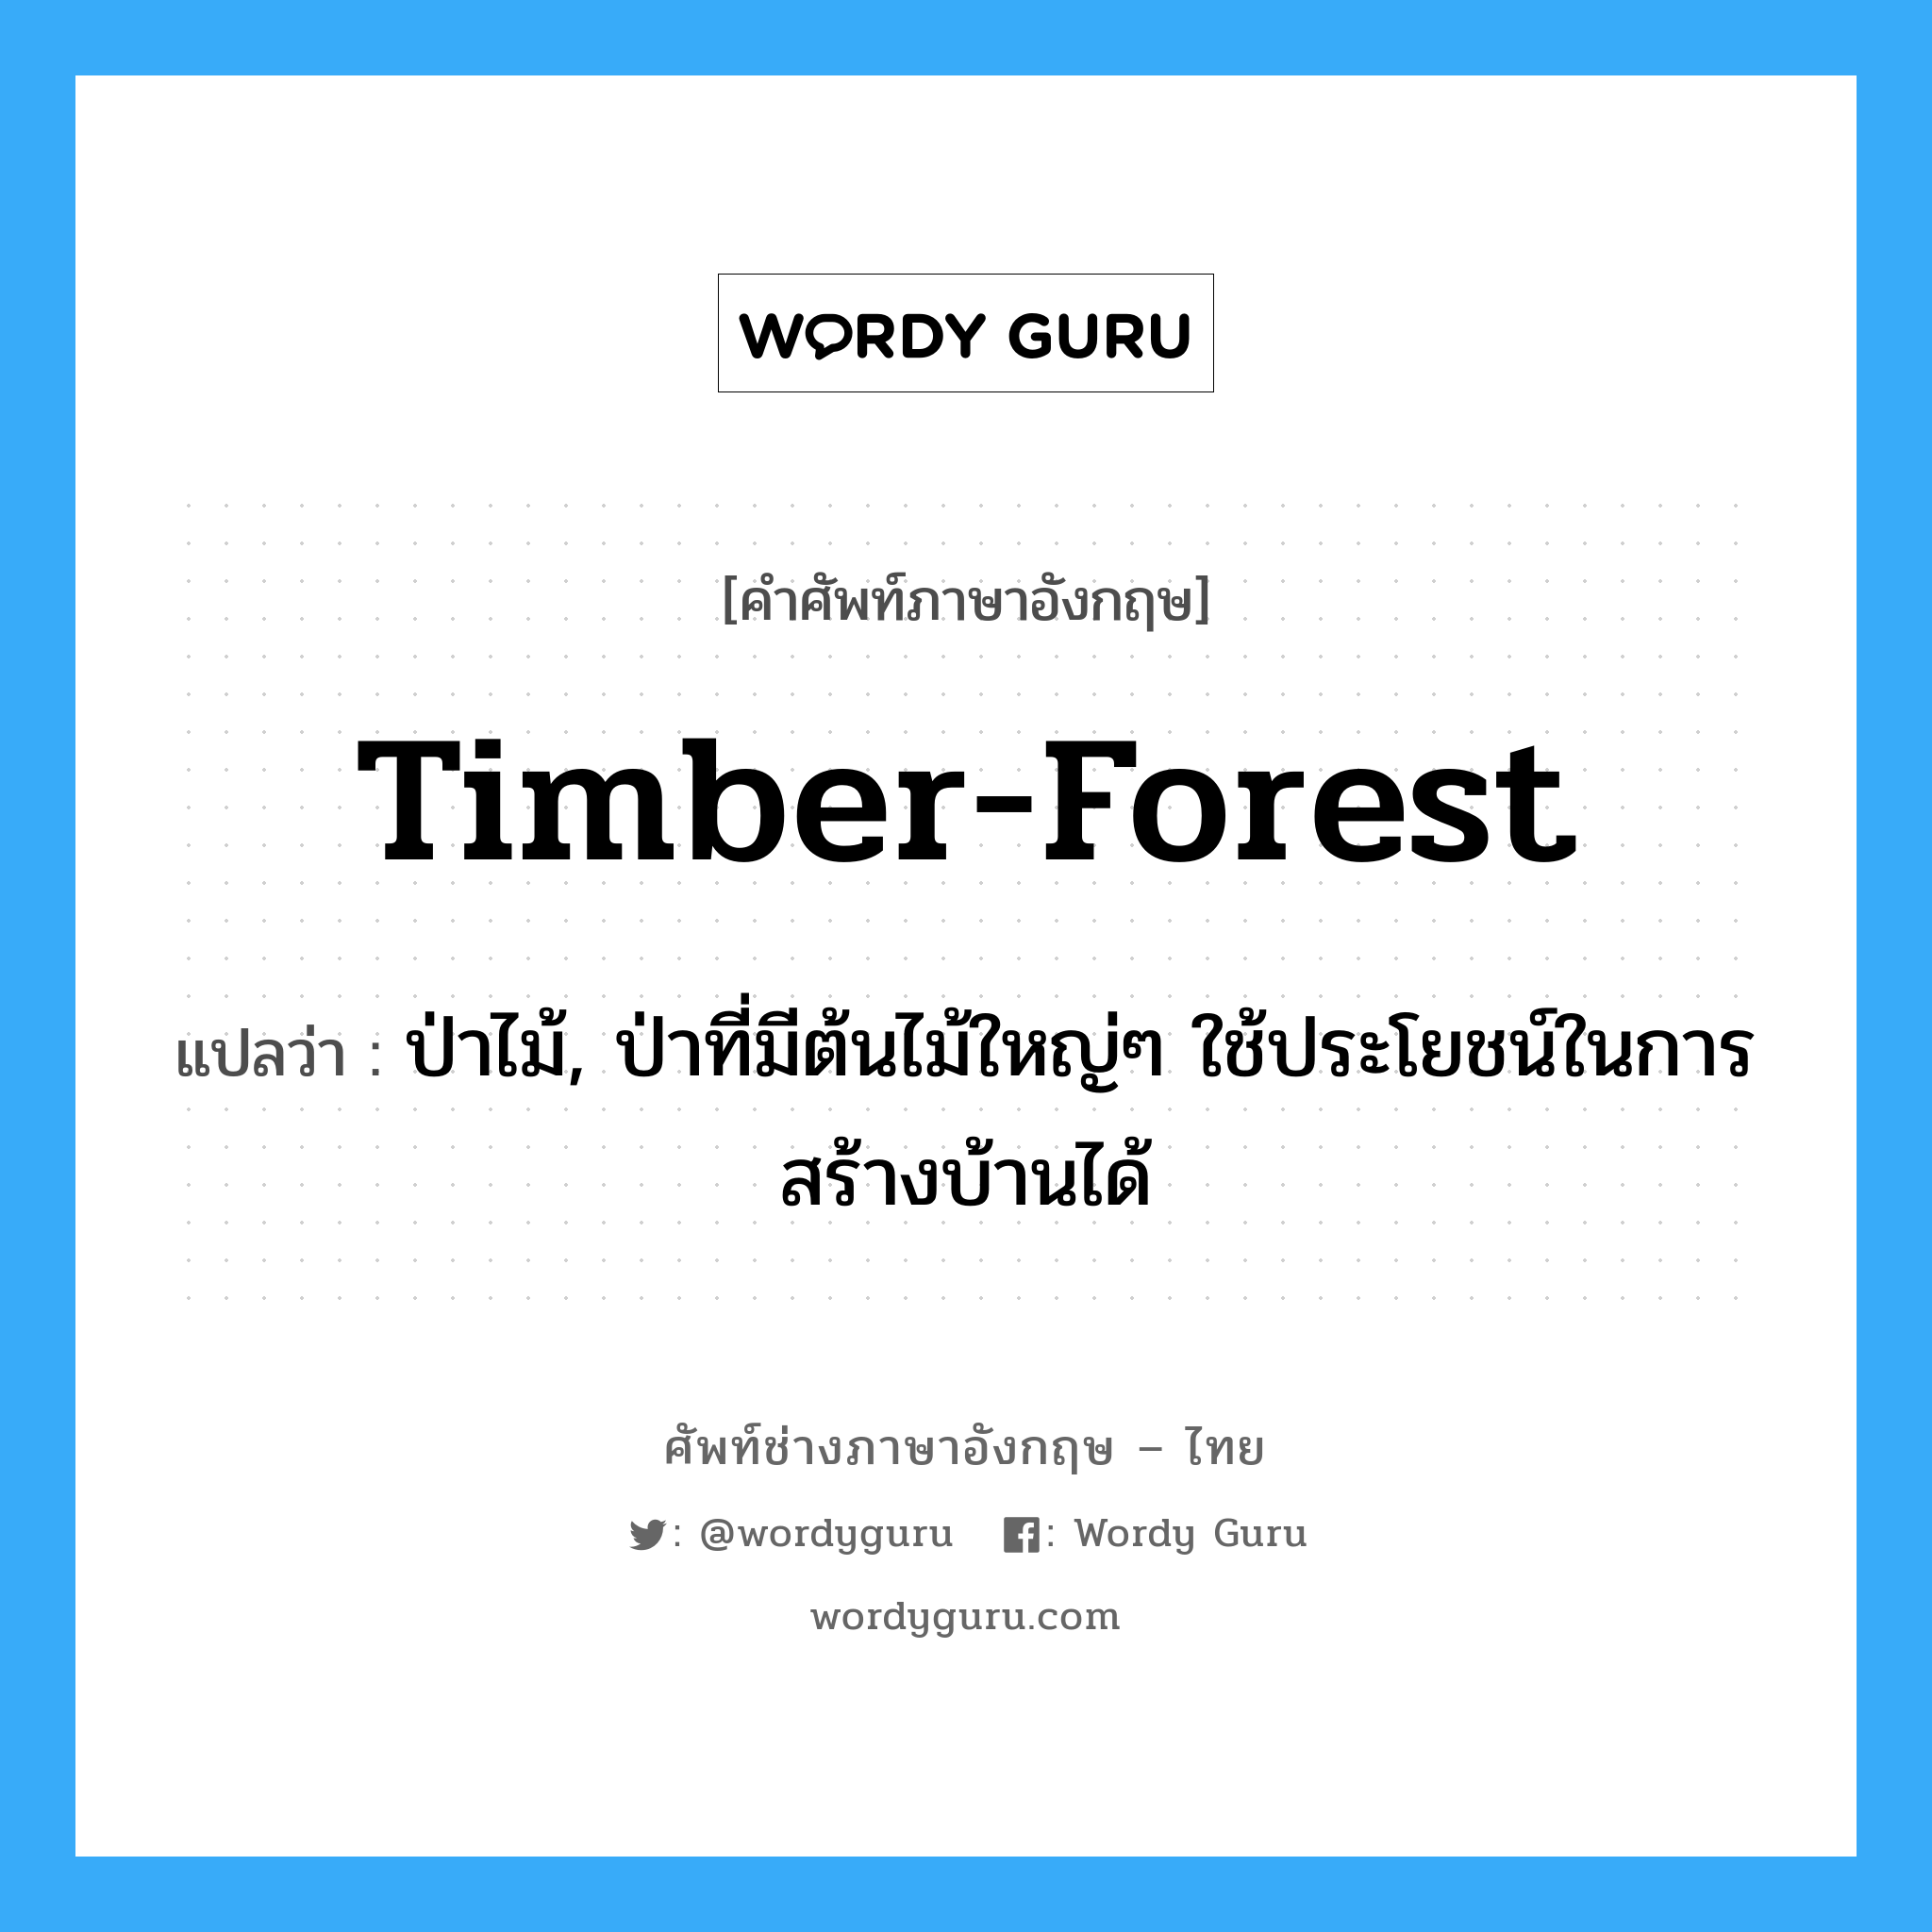 timber-forest แปลว่า?, คำศัพท์ช่างภาษาอังกฤษ - ไทย timber-forest คำศัพท์ภาษาอังกฤษ timber-forest แปลว่า ป่าไม้, ป่าที่มีต้นไม้ใหญ่ๆ ใช้ประโยชน์ในการสร้างบ้านได้